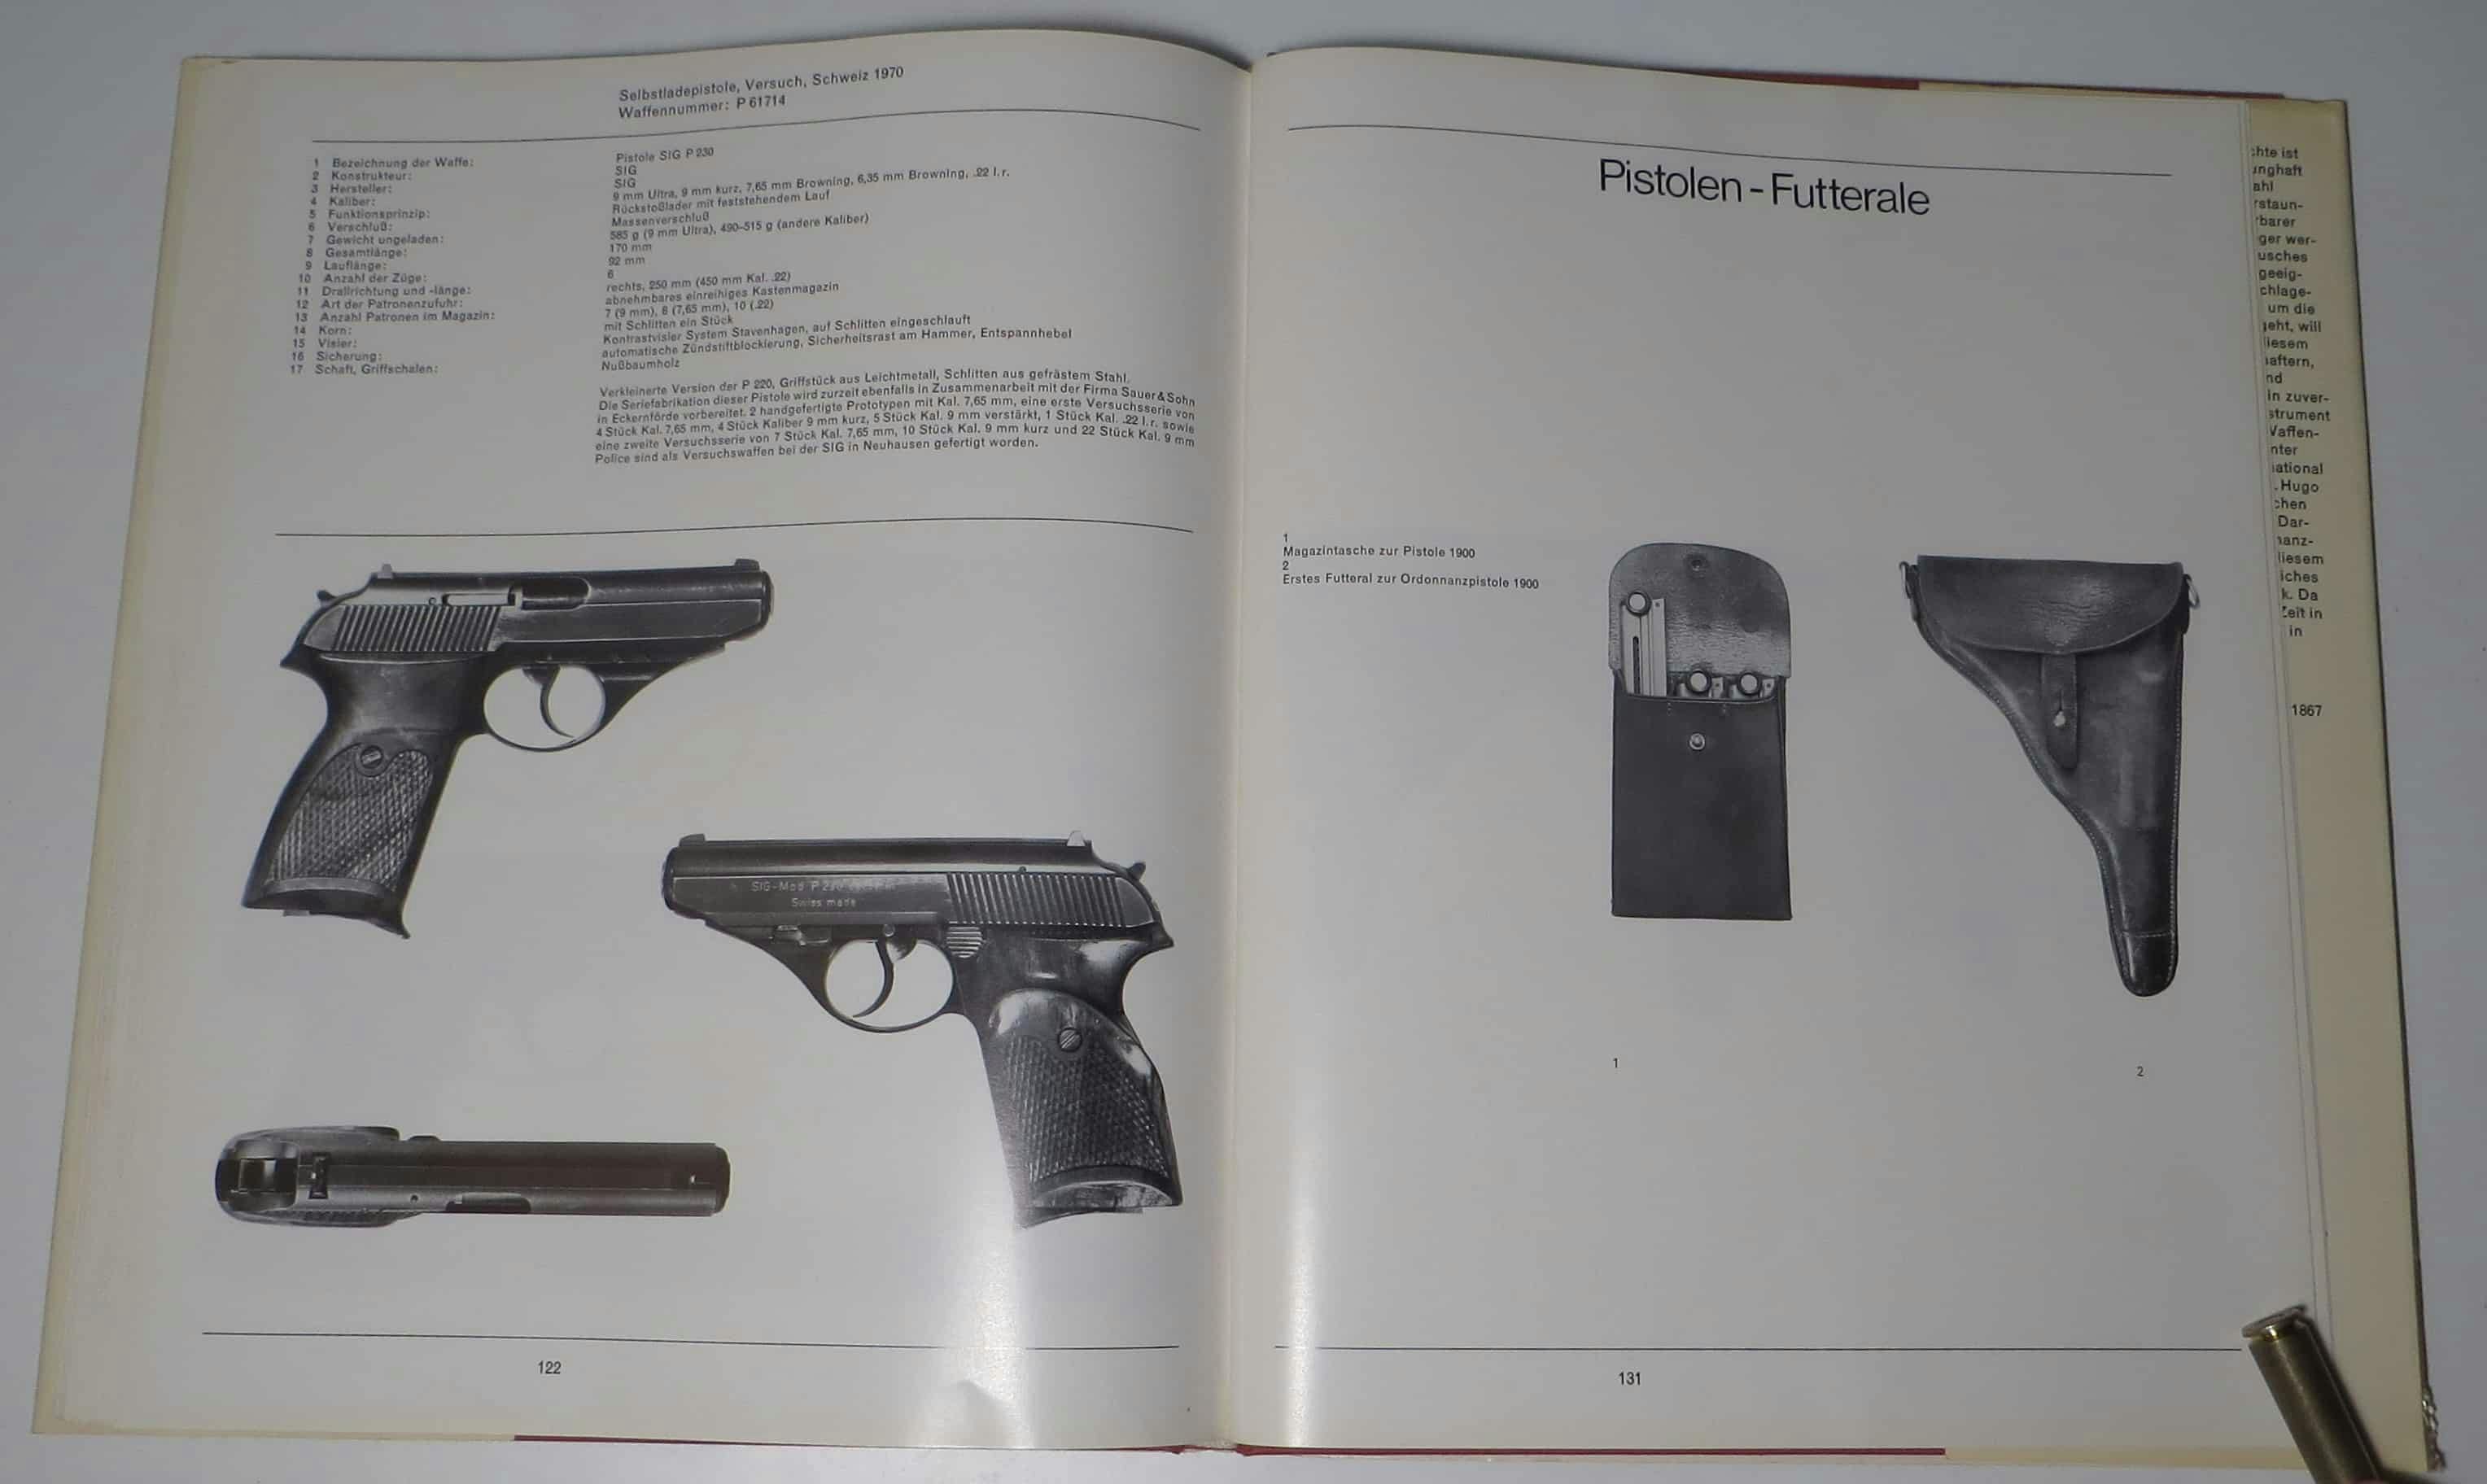 SIG P230 VErsuchswaffen linkerhand. Rechts die EInleitung zu den Futteralen.